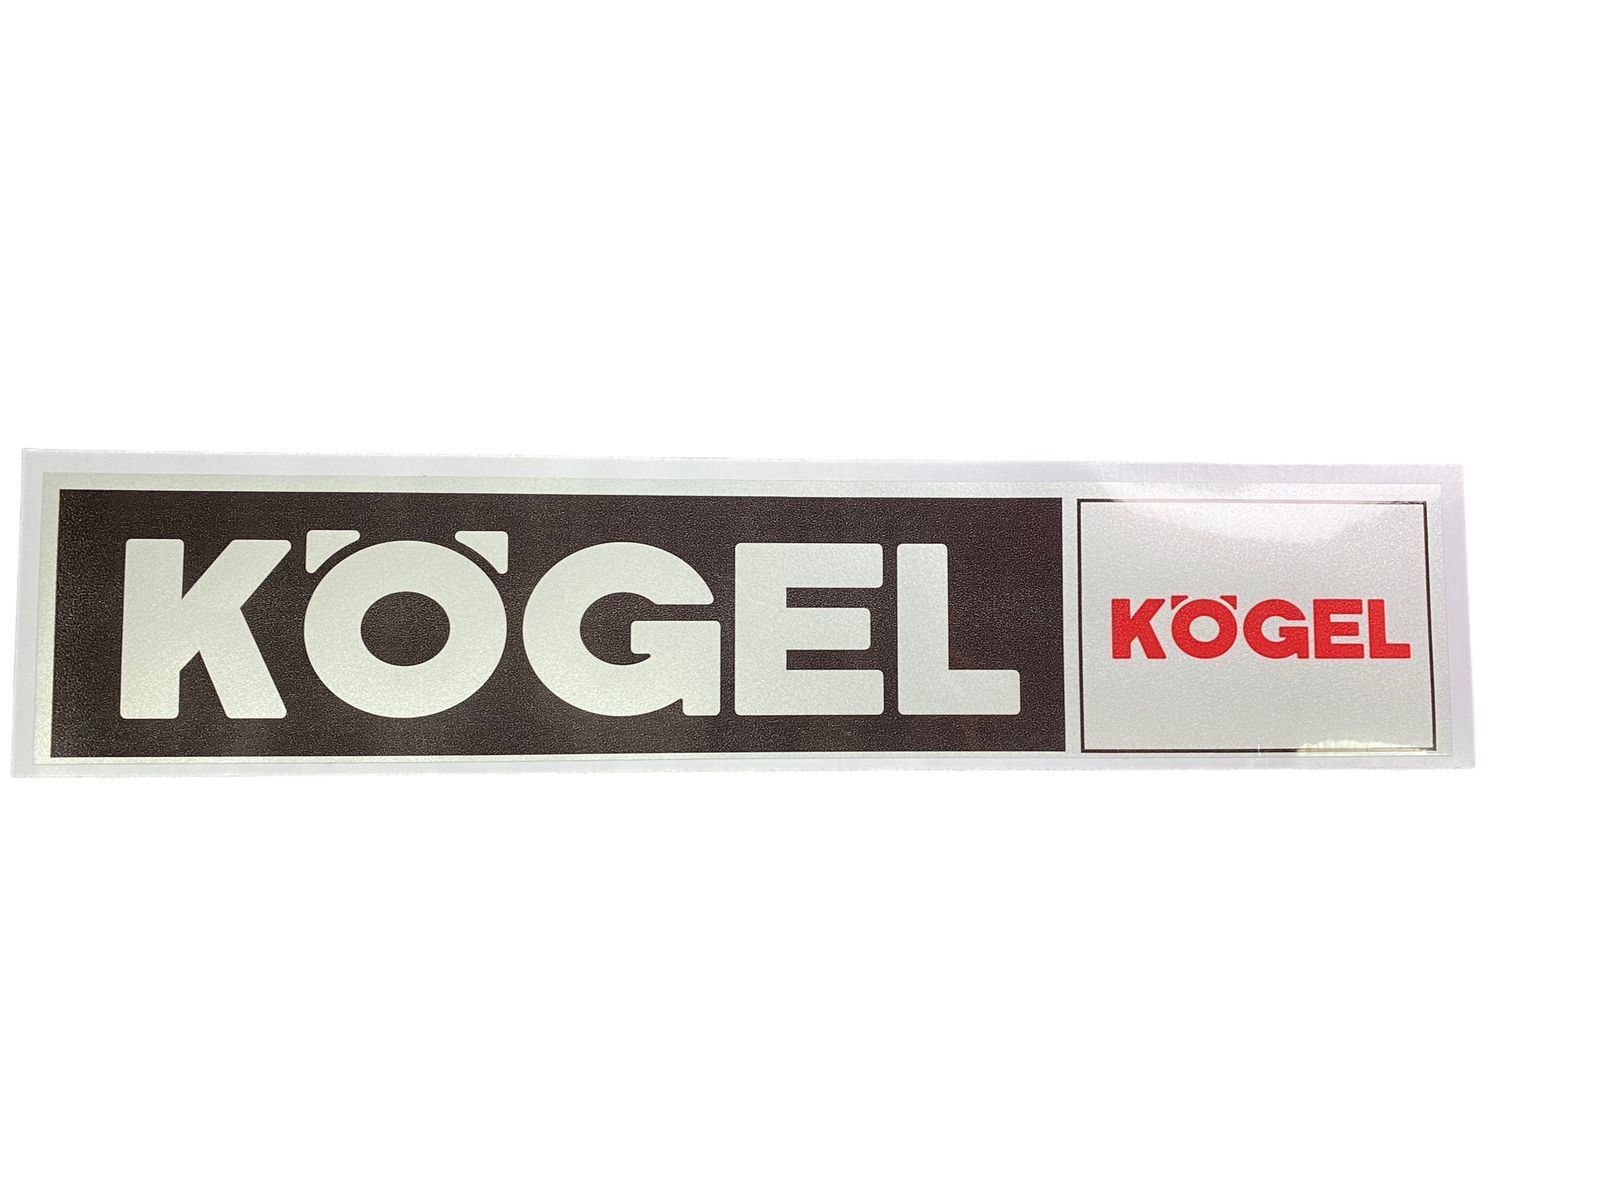 Наклейка Kogel. Наклейка Kogel артикул. Kogel логотип. Наклейки на прицеп